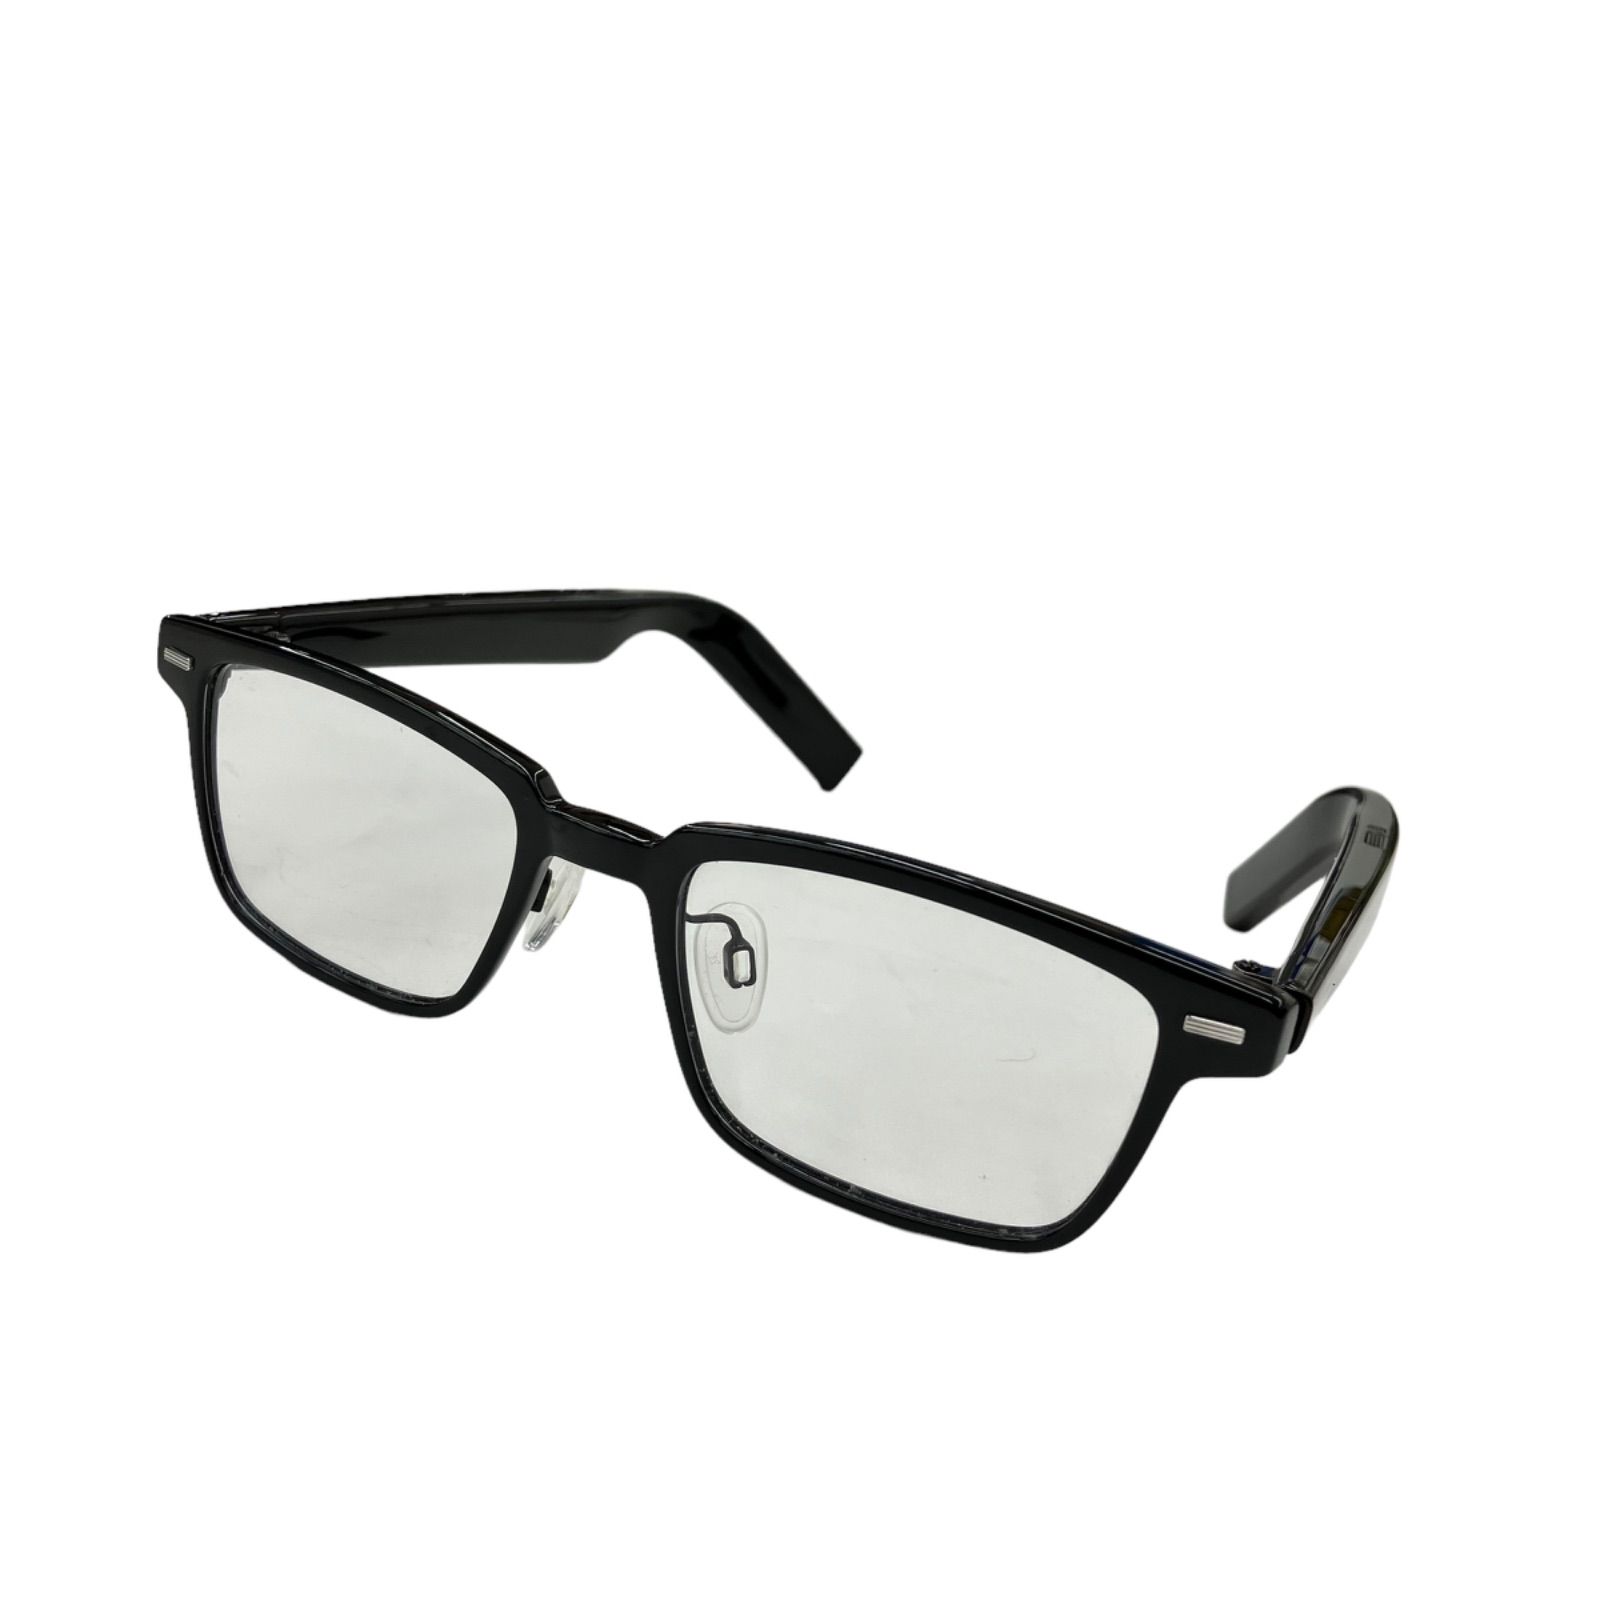 HUAWEI Eyewear ワイヤレスオーディオグラス EVI-CG010 ウェリントン型 メガネ型イヤホン／通電未確認